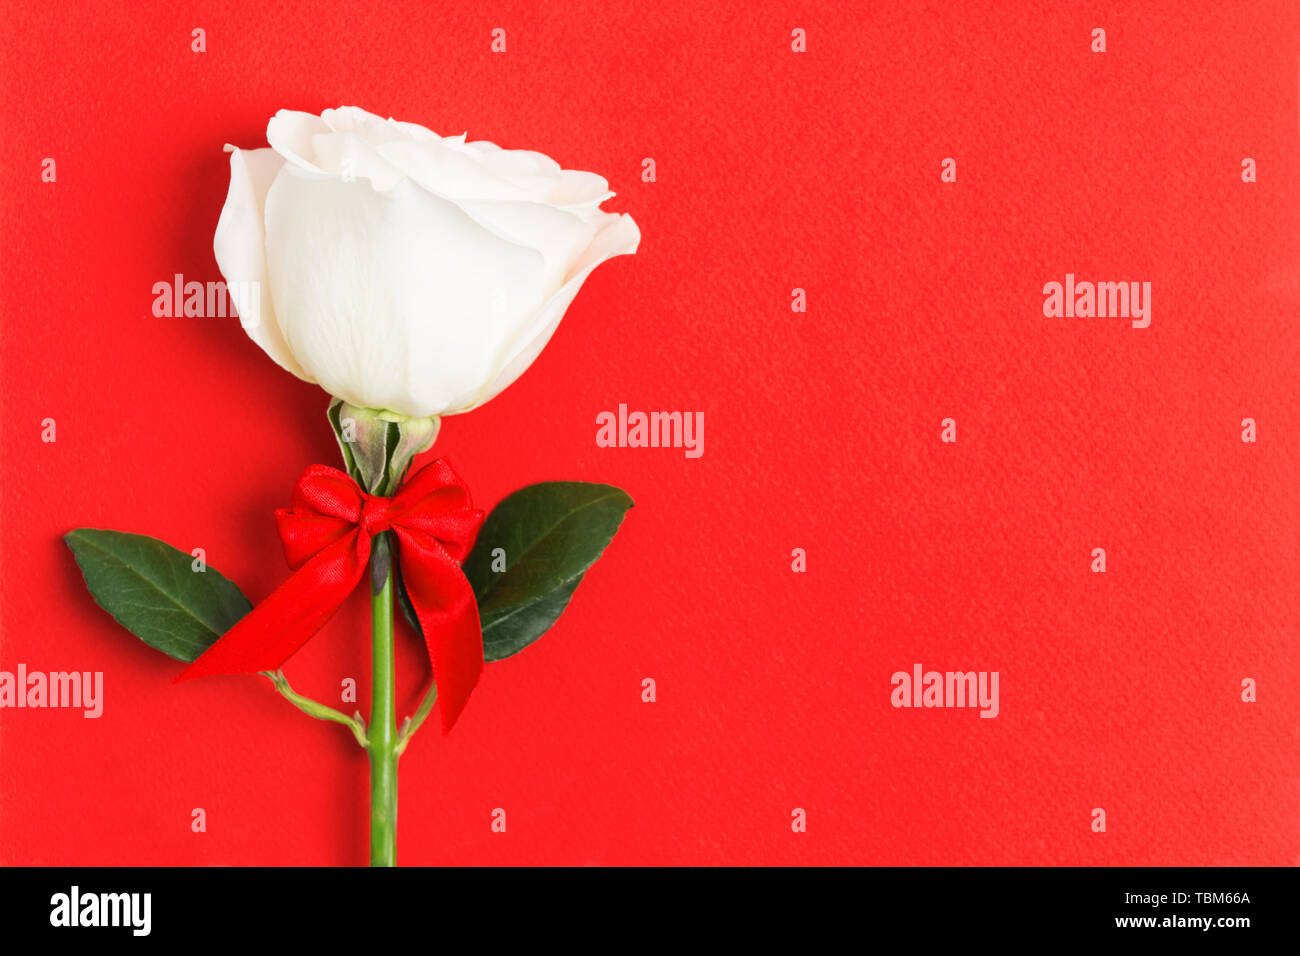 Weiße Rose mit roter Schleife auf dem Roten strukturierten Hintergrund mit kopieren. Valentinstag Konzept. Schönes Geschenk mit Liebe. Flach Stil. Ansicht von oben Stockfoto